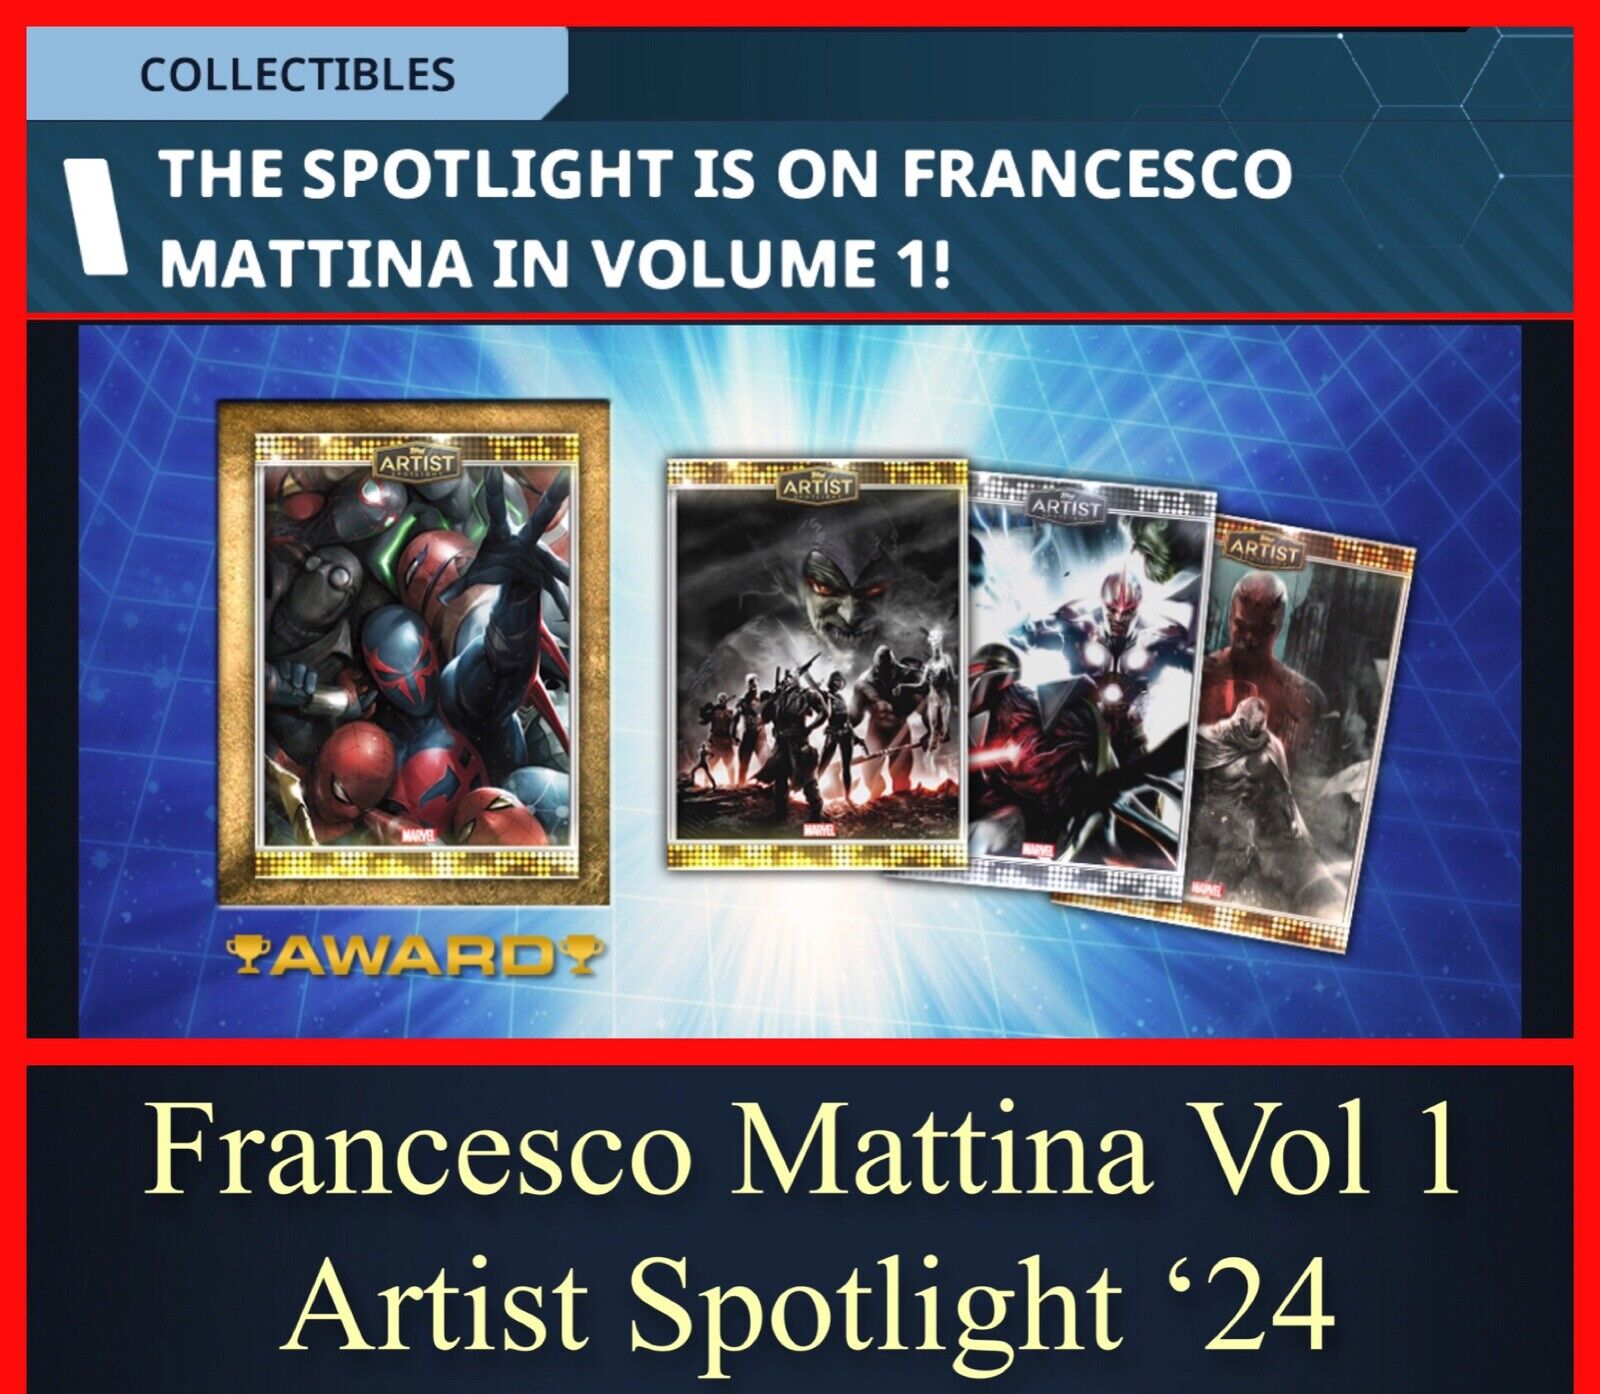 FRANCESCO MATTINA V1 ARTIST SPOTLIGHT-ALL 4 EPICS NO AWARD-TOPPS MARVEL COLLECT